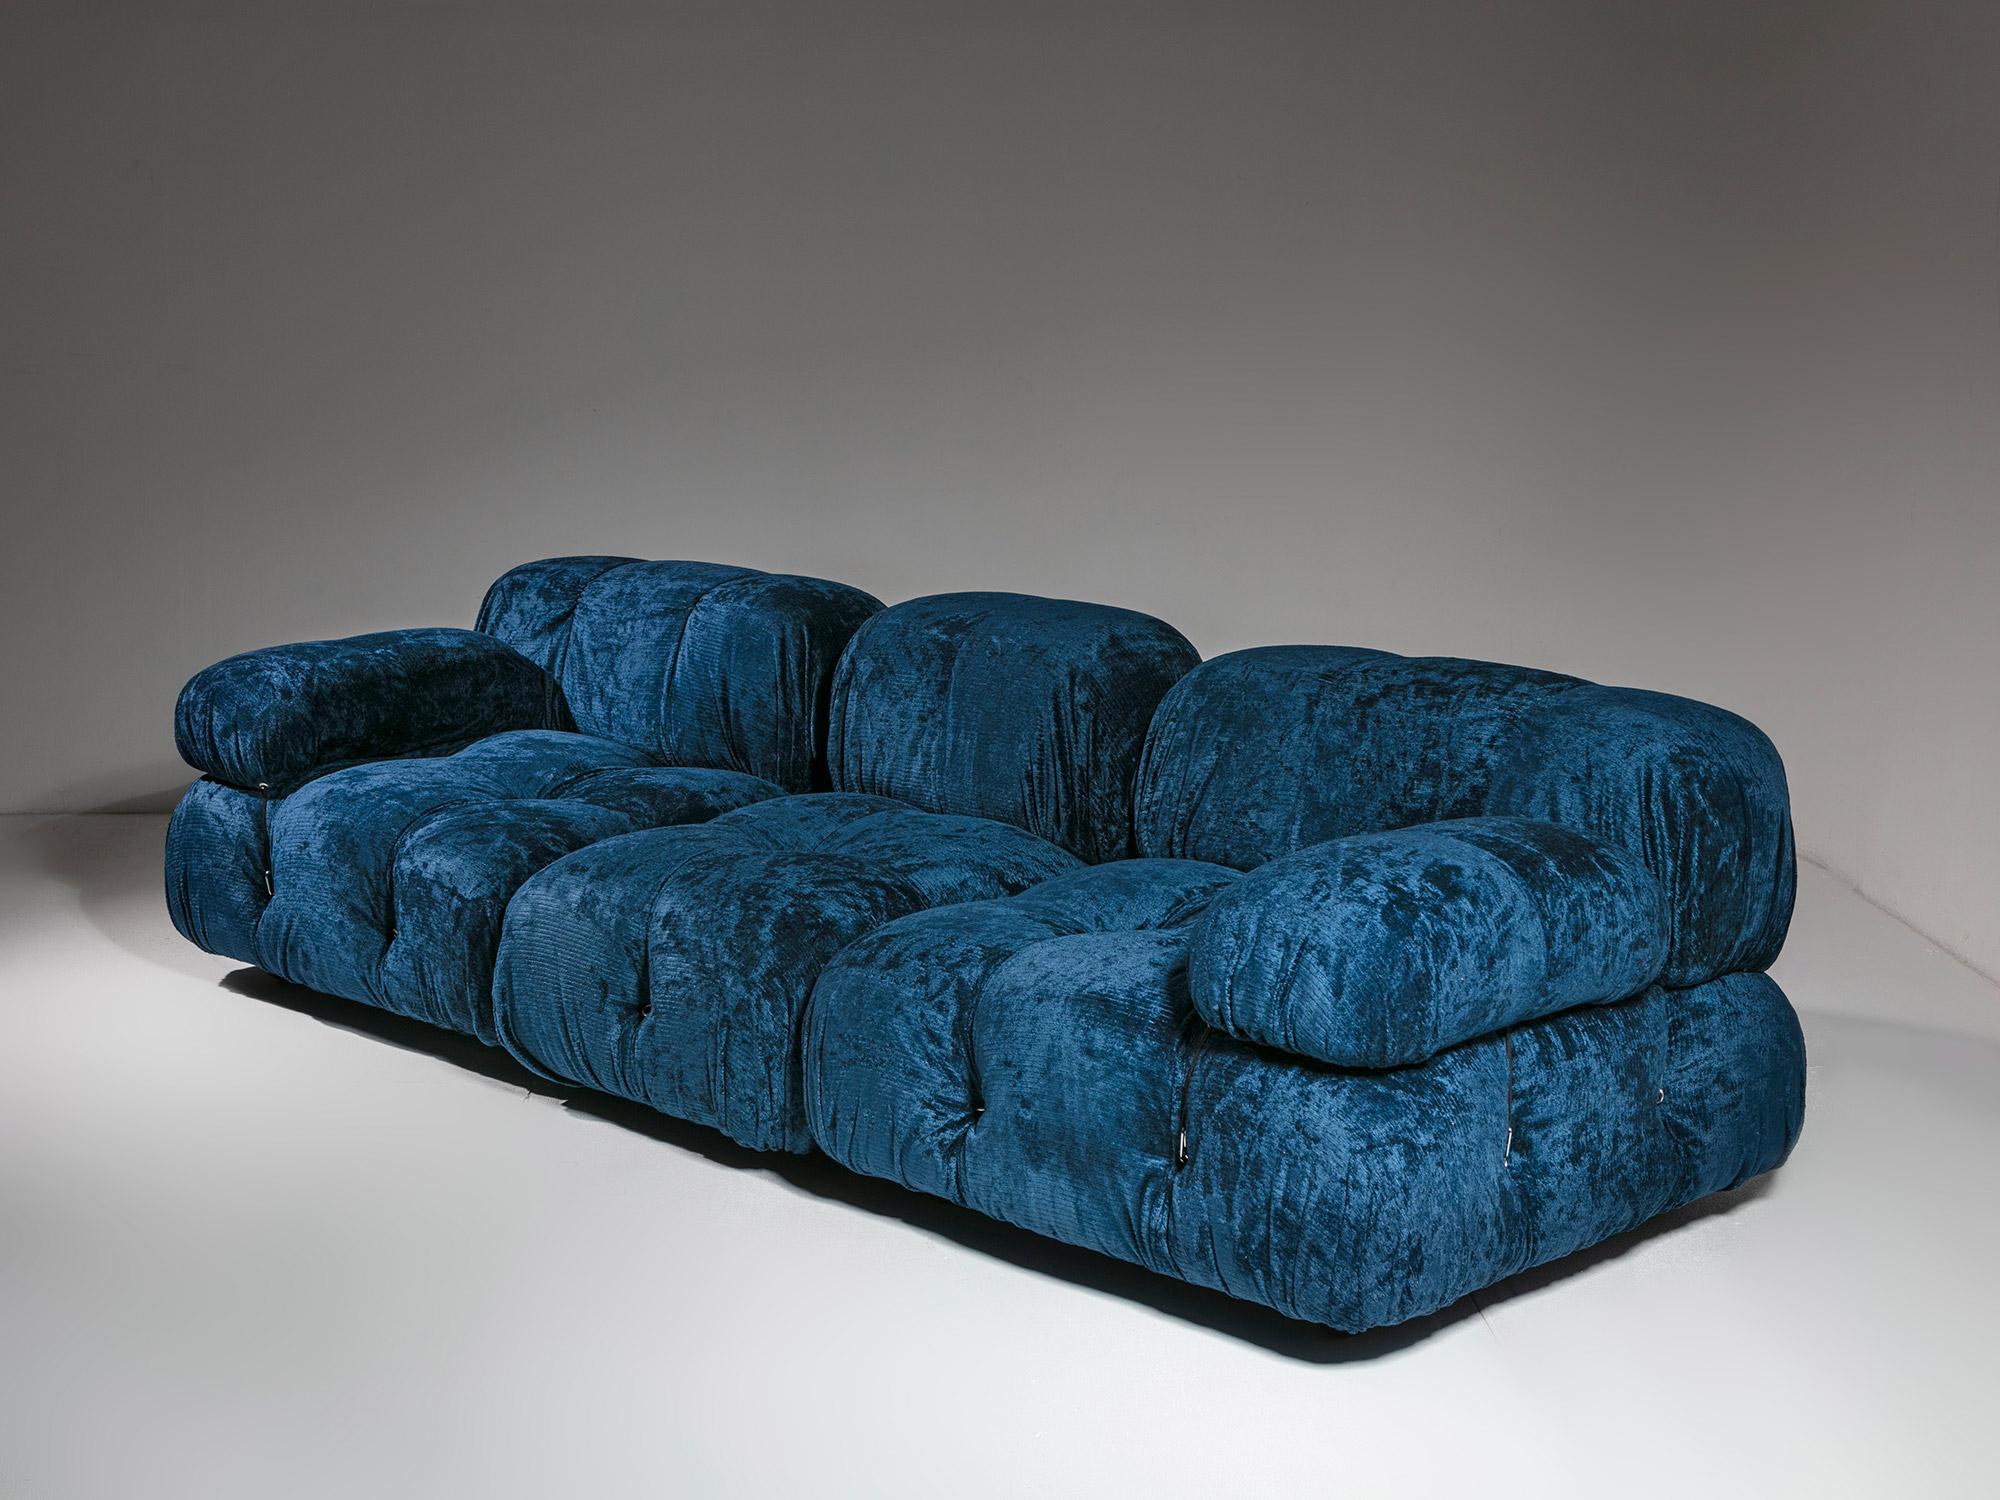 Sektionssofa Camaleonda von Mario Bellini für B&B.
Ausgabe mit dem Label der 70er Jahre und blauem Chenillebezug.
Ebenfalls erhältlich ist ein passender Sessel mit demselben blauen Bezug.  